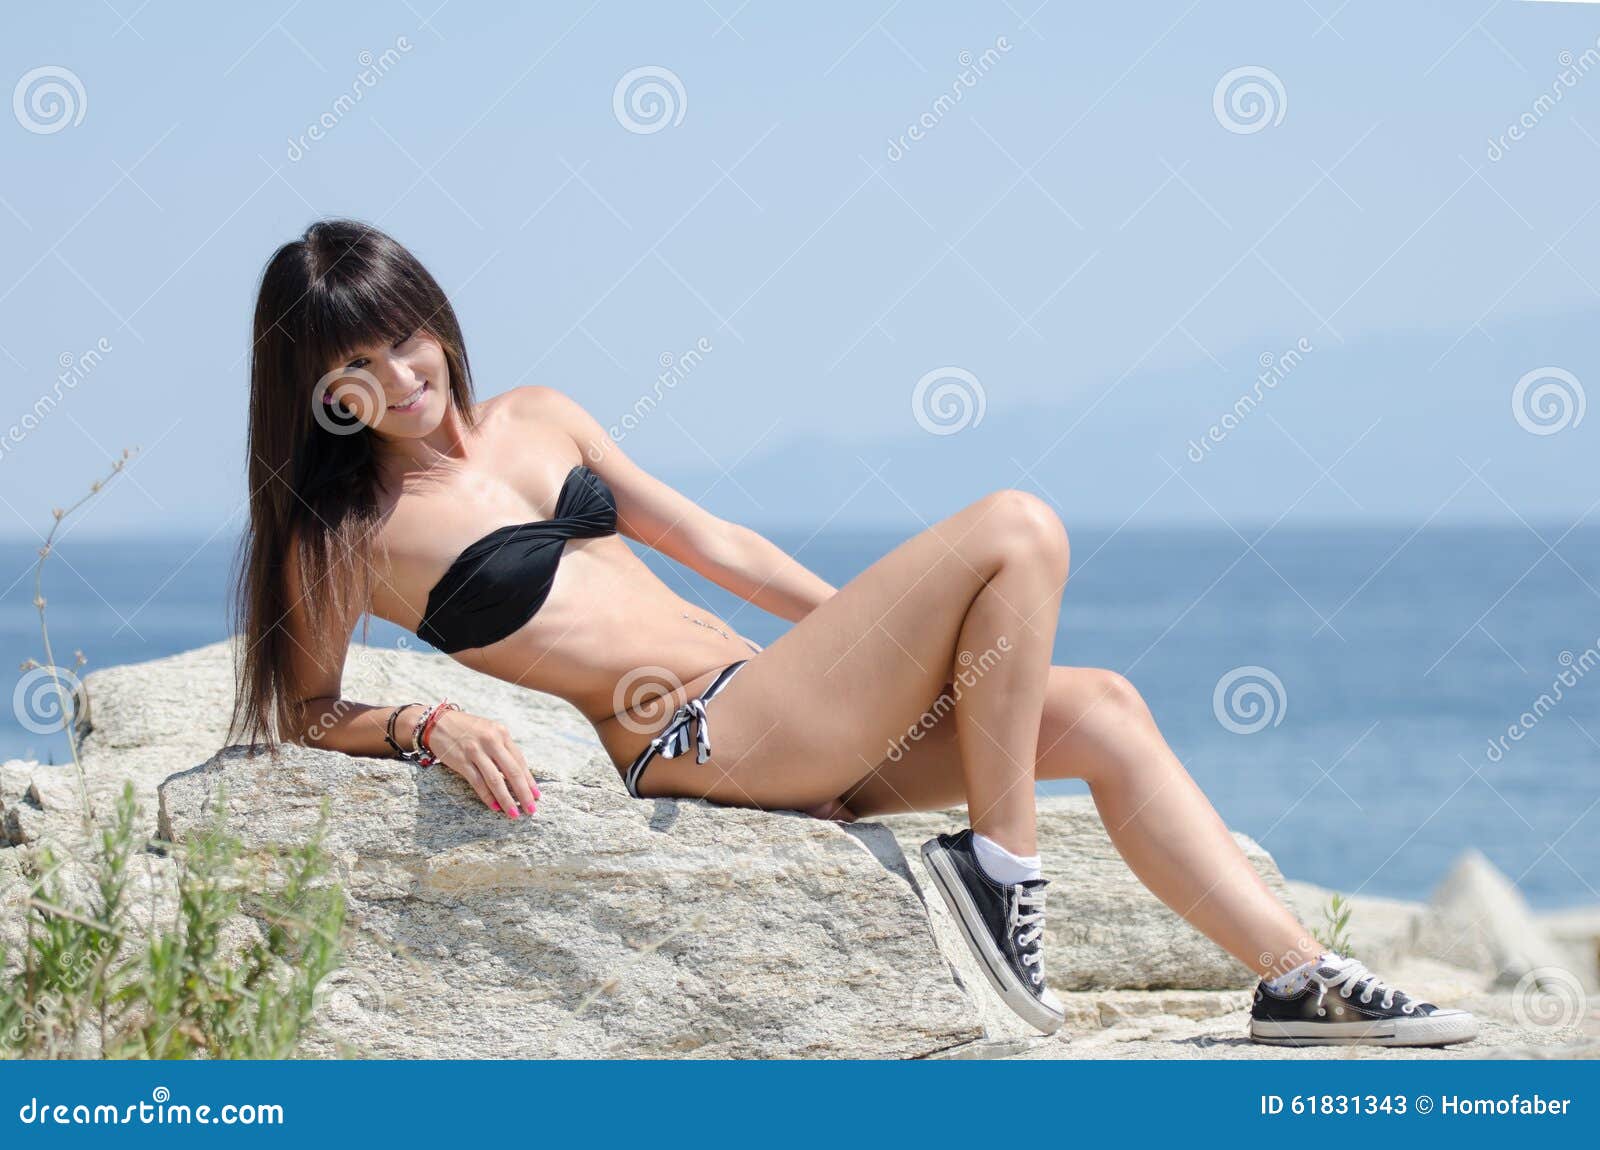 woman with long hair and prefect slim body in bikini